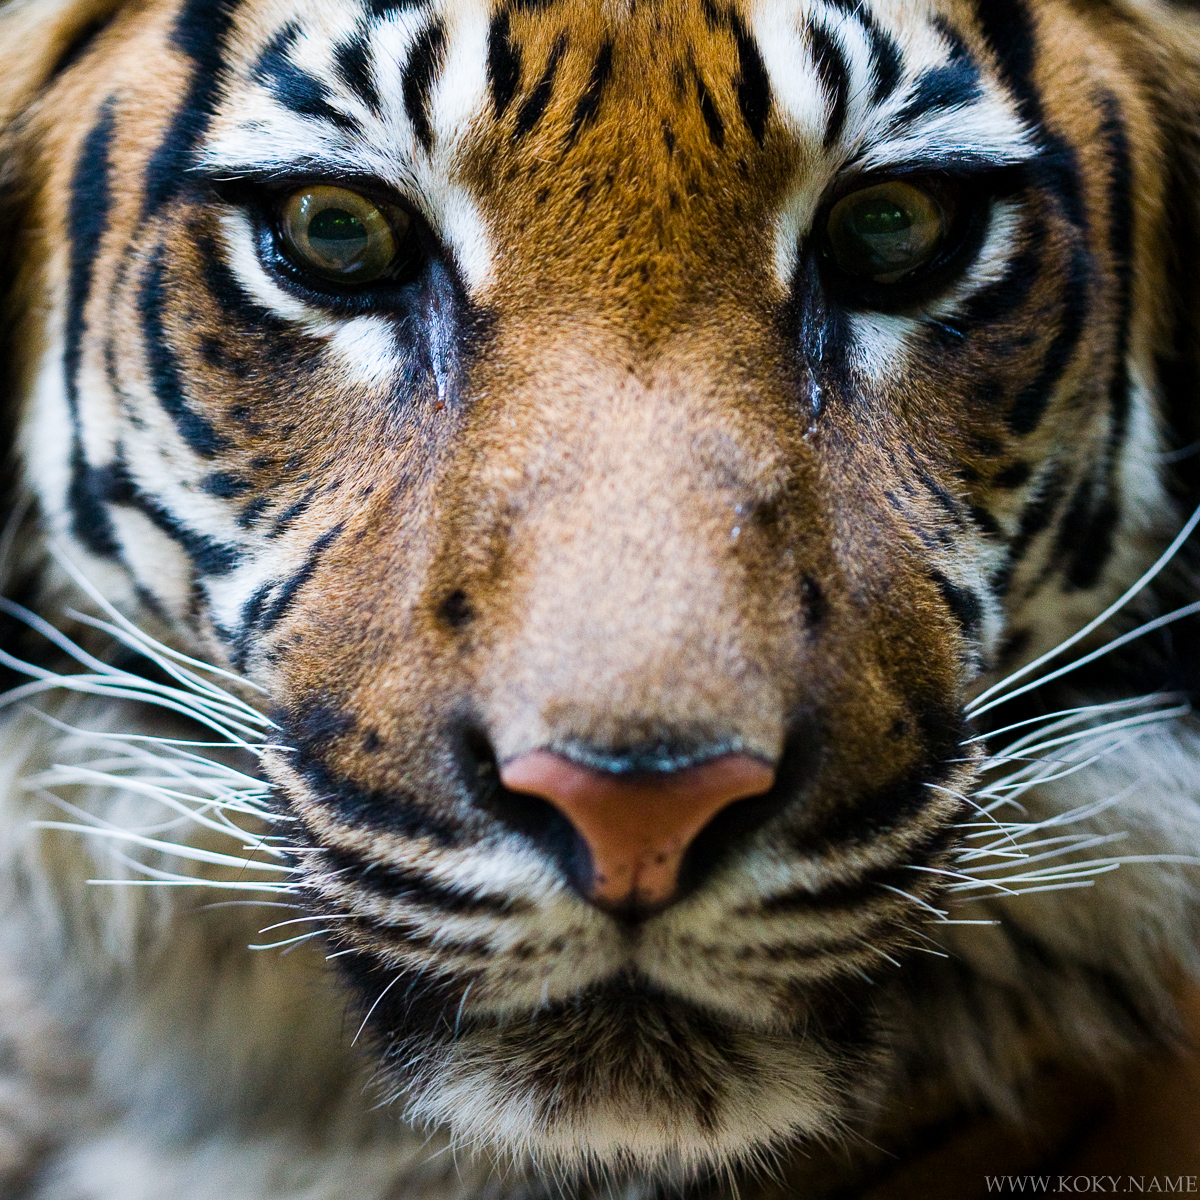 tygr ussurijský